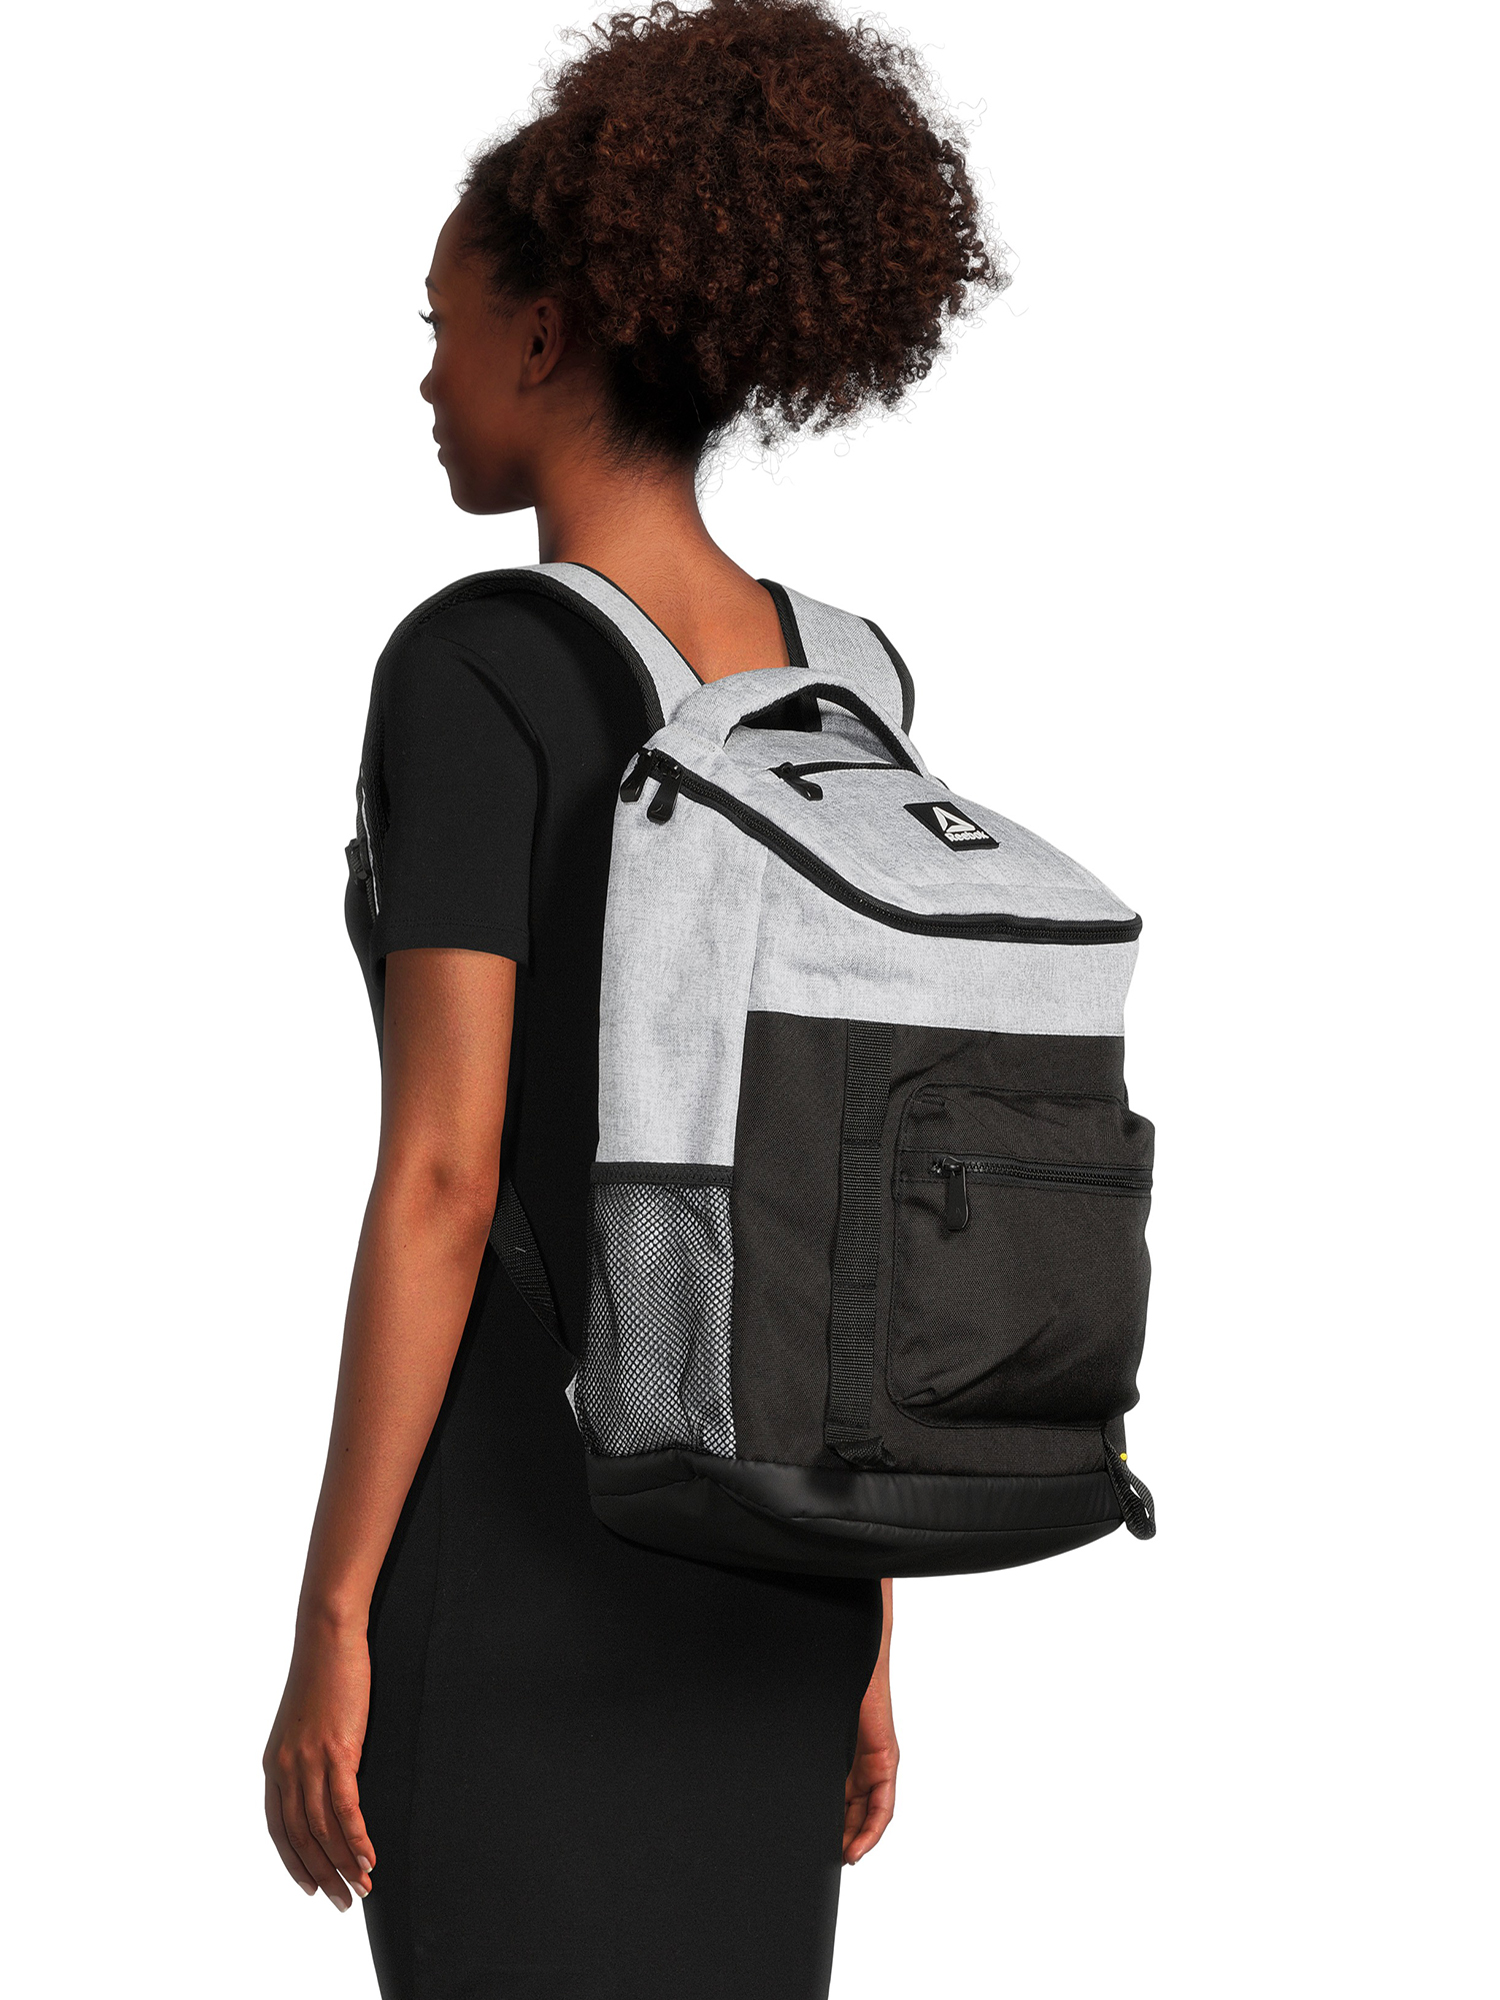 Reebok Unisex Adult Bobbie Top Loader 18.5" Laptop Backpack, Light Heather Grey - image 2 of 6